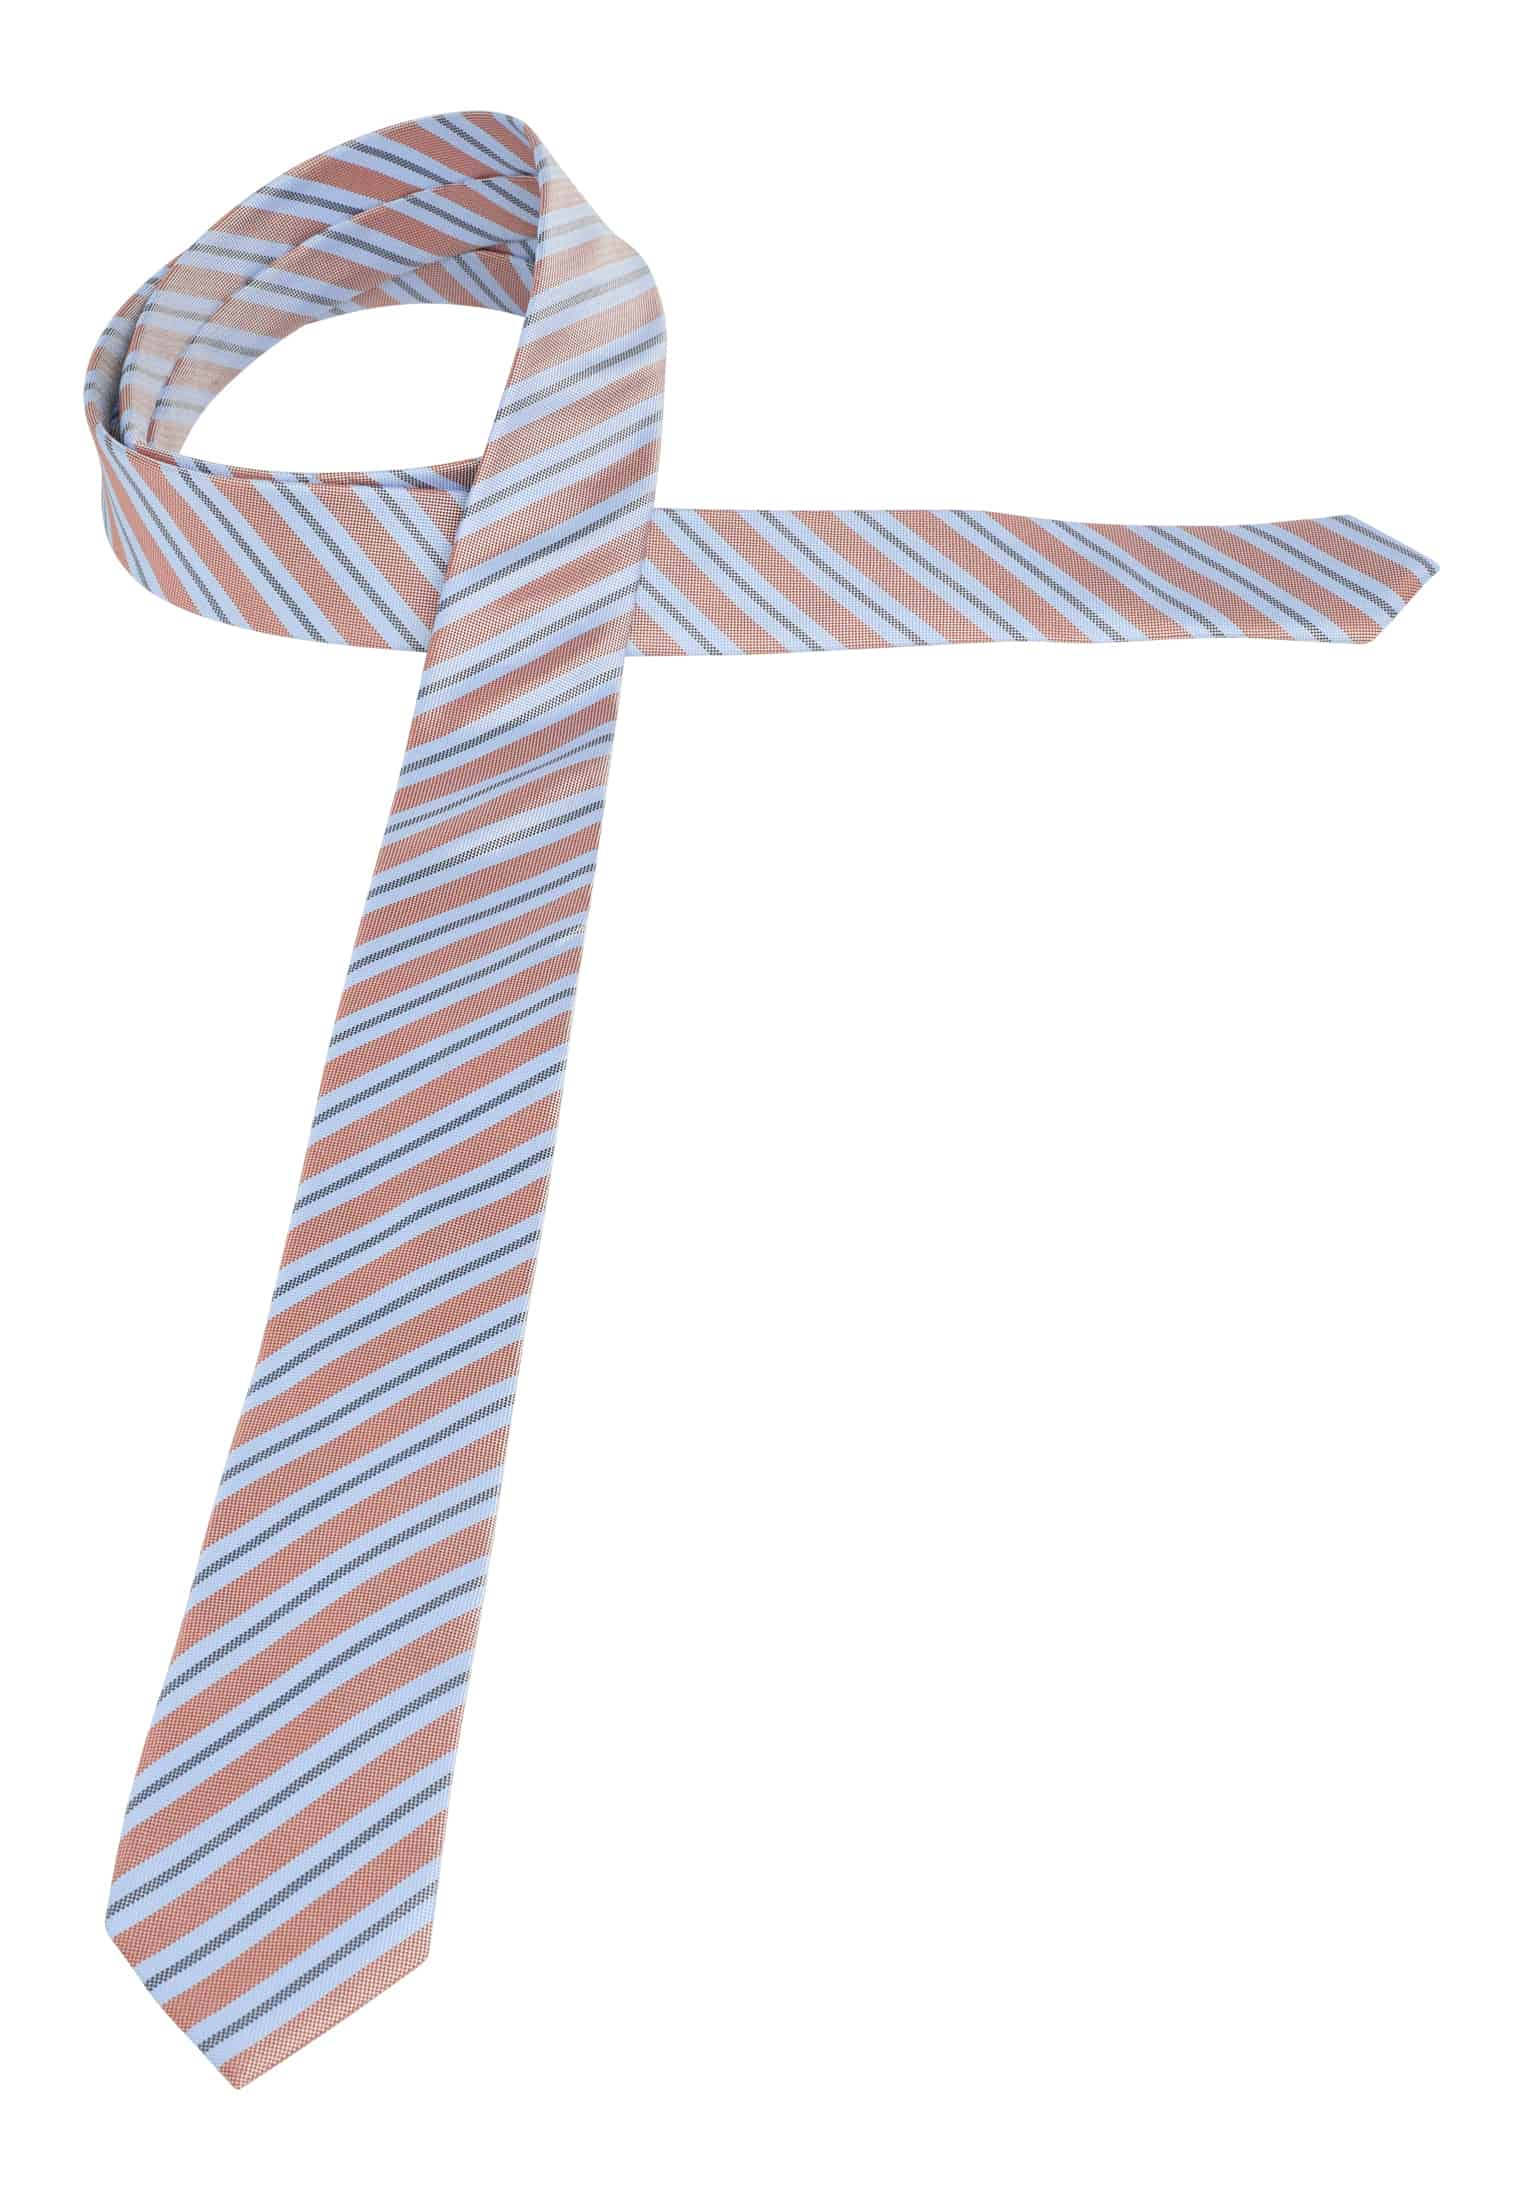 Krawatte in hellblau/orange gestreift | | 1AC02000-81-33-142 142 | hellblau/orange